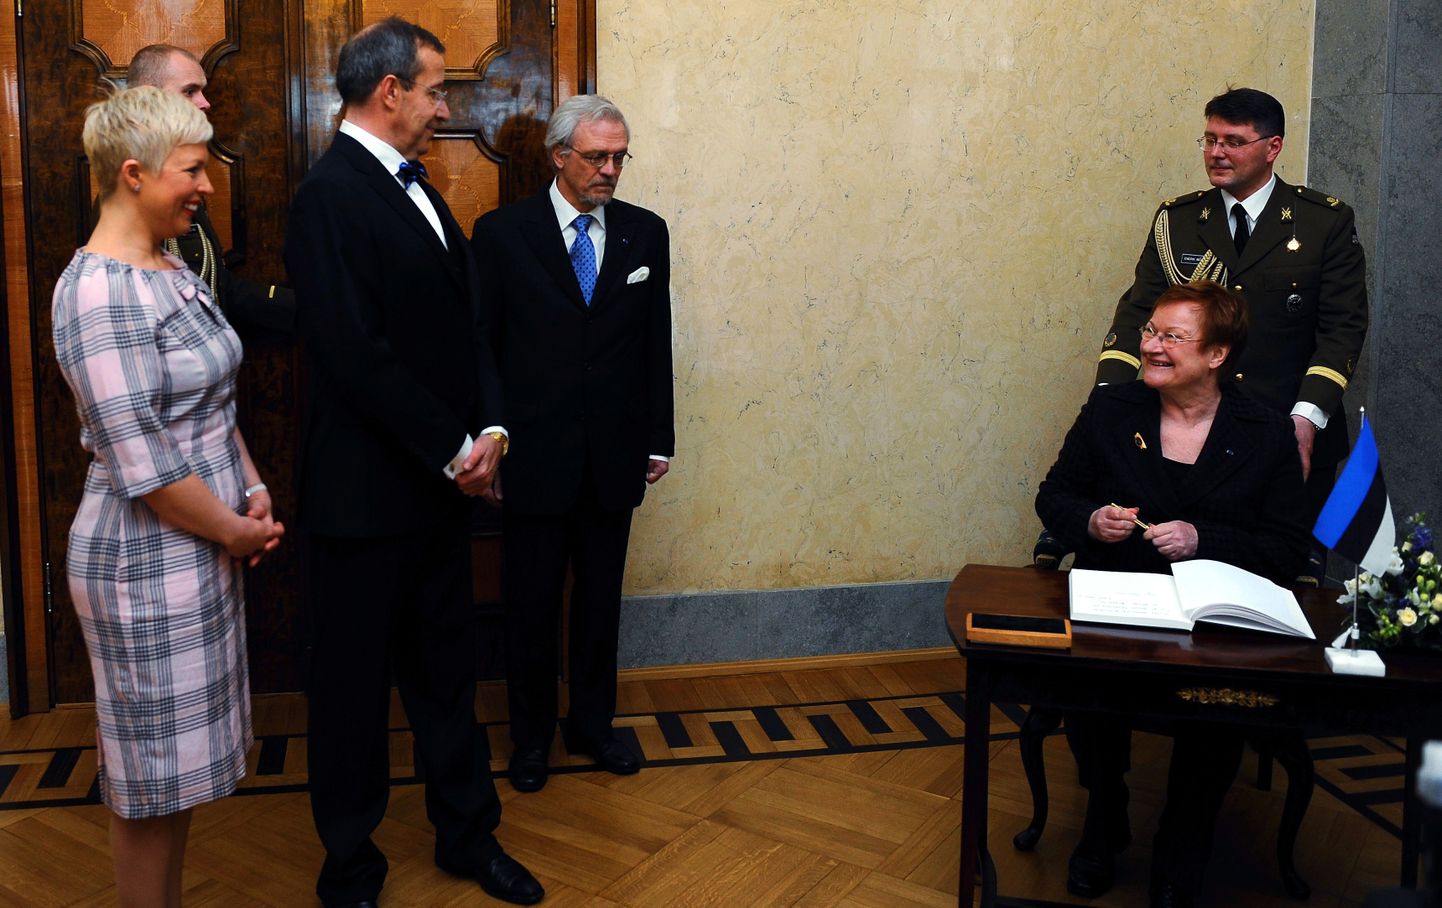 Soome president Tarja Halonen riigivisiidil Eestis.